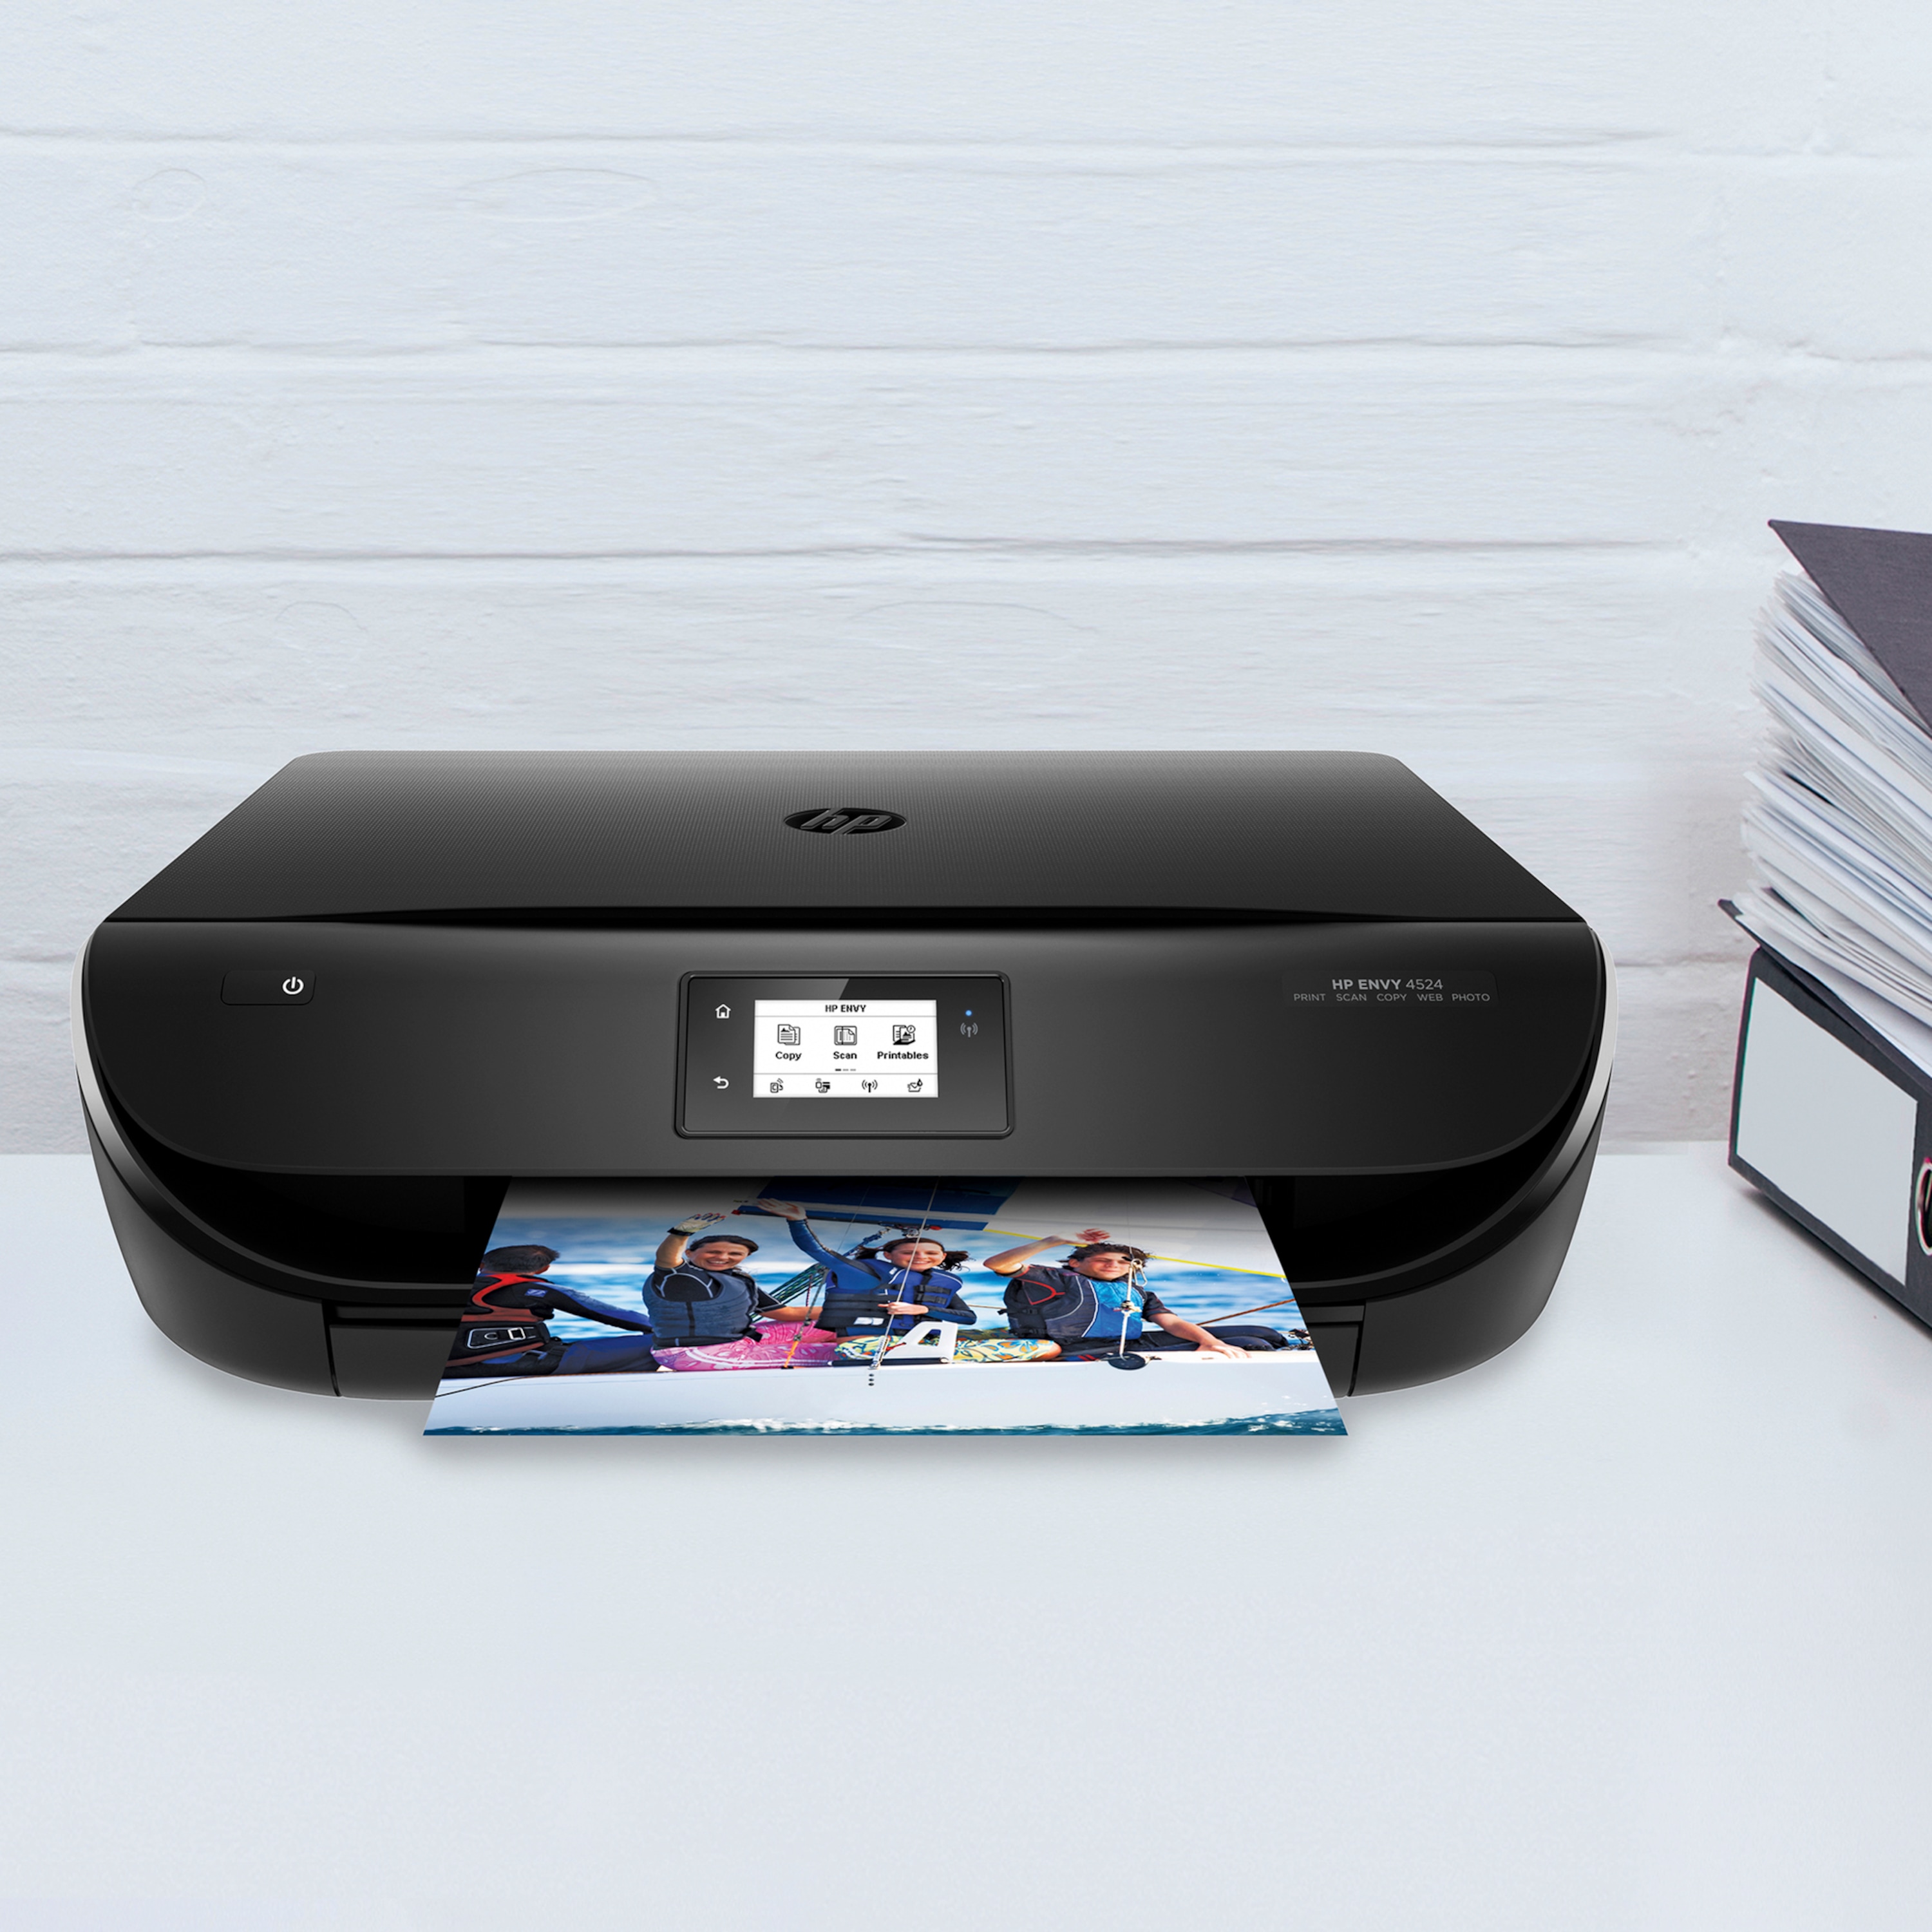 HP ENVY 4524 All-in-One Drucker - Drucken, Kopieren und Scannen mit einem Gerät, WLAN 802.11n, USB 2.0, Wireless Direkt Technologie